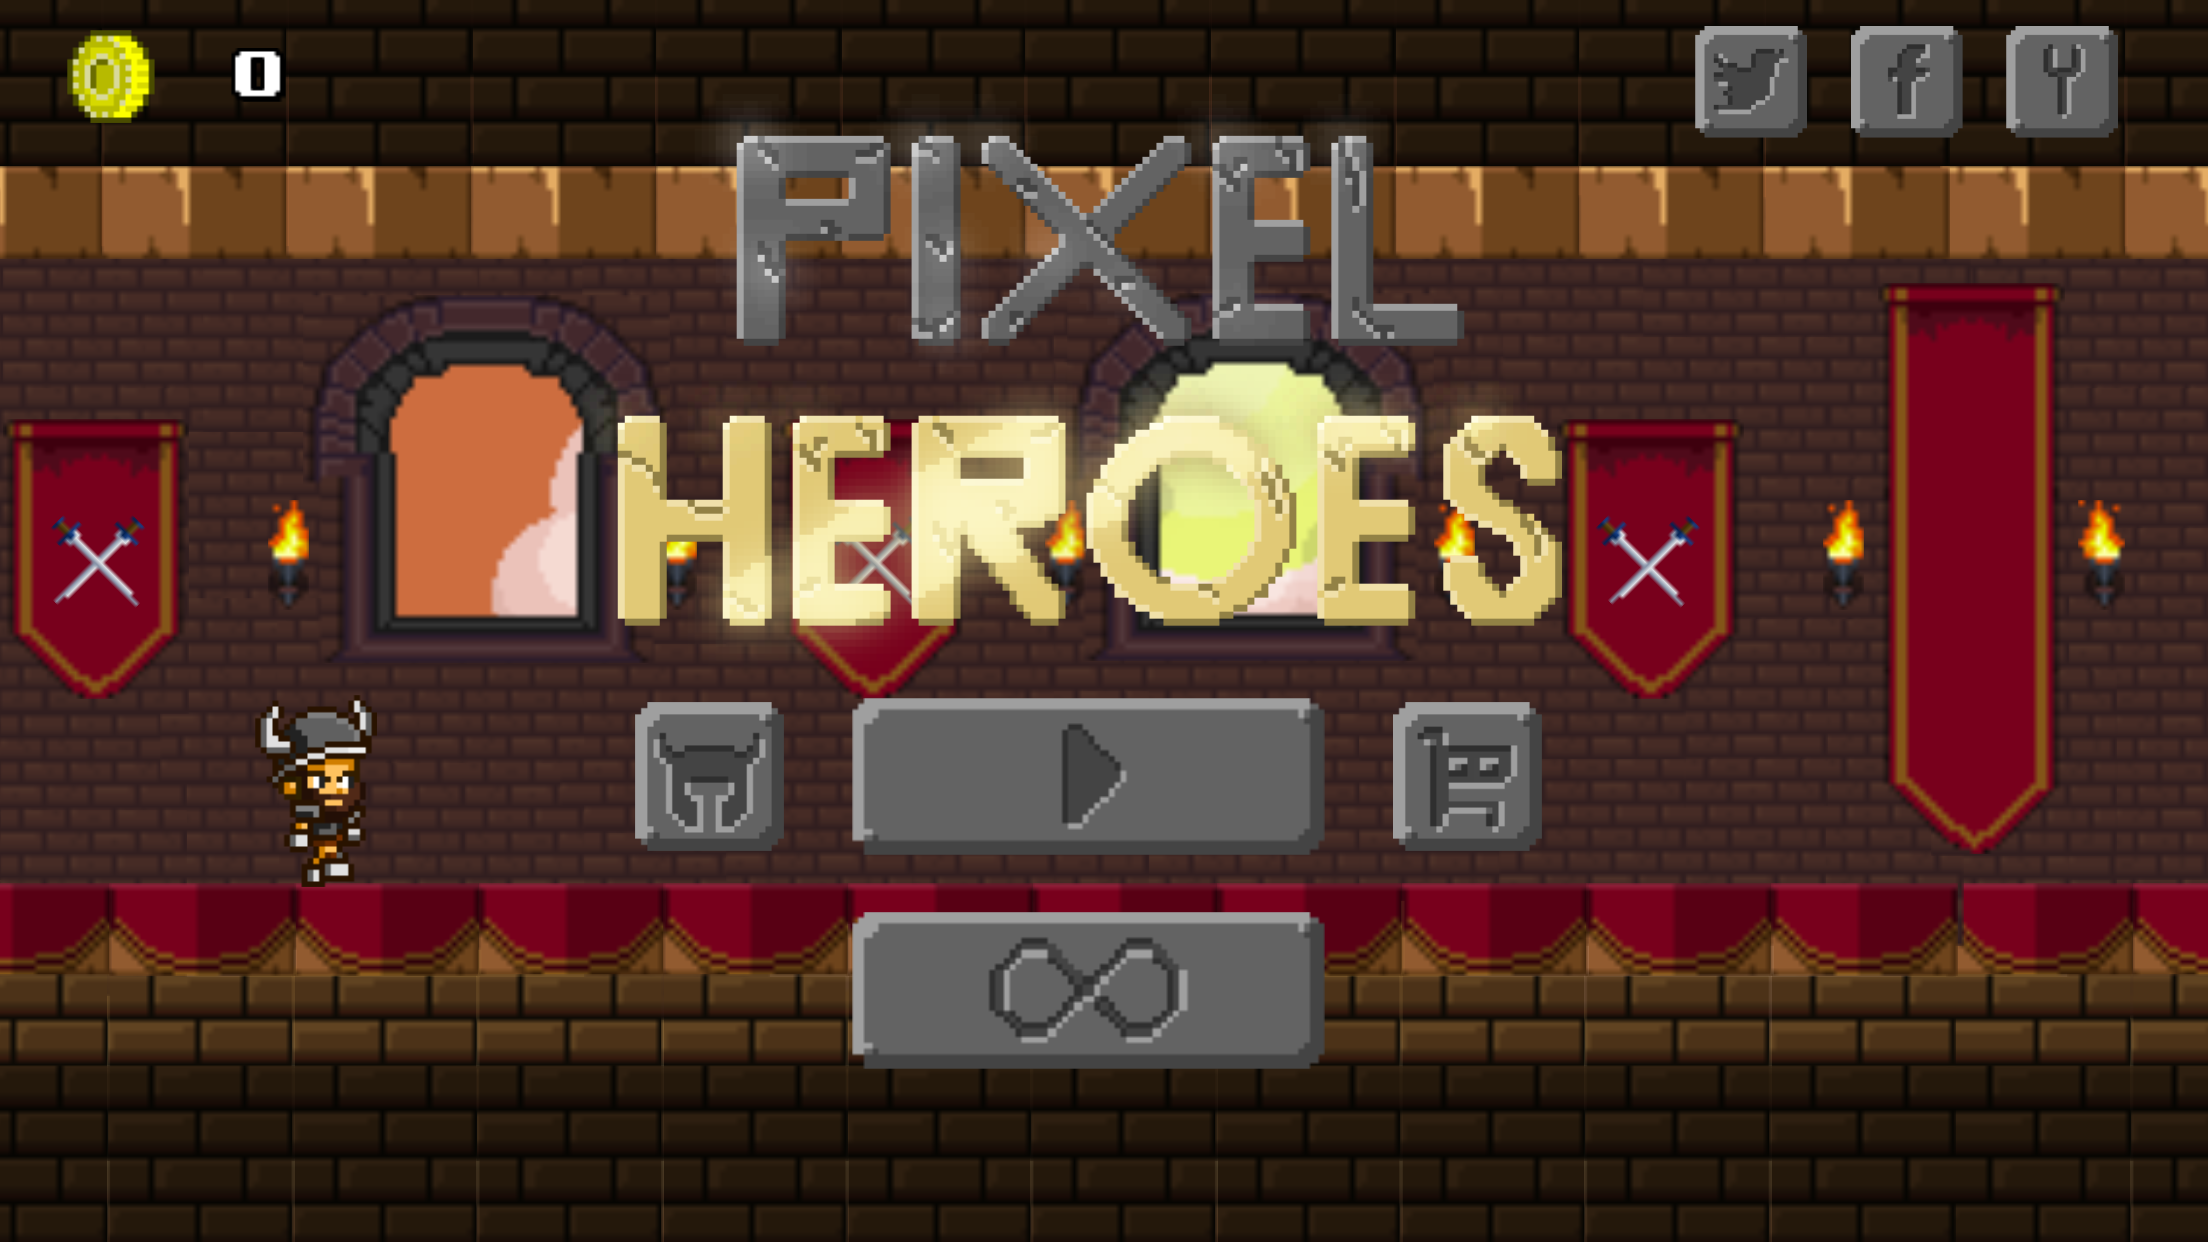 Screenshot 1 of Pixel Heroes - Pelari Arked Tanpa Kesudahan 1.7